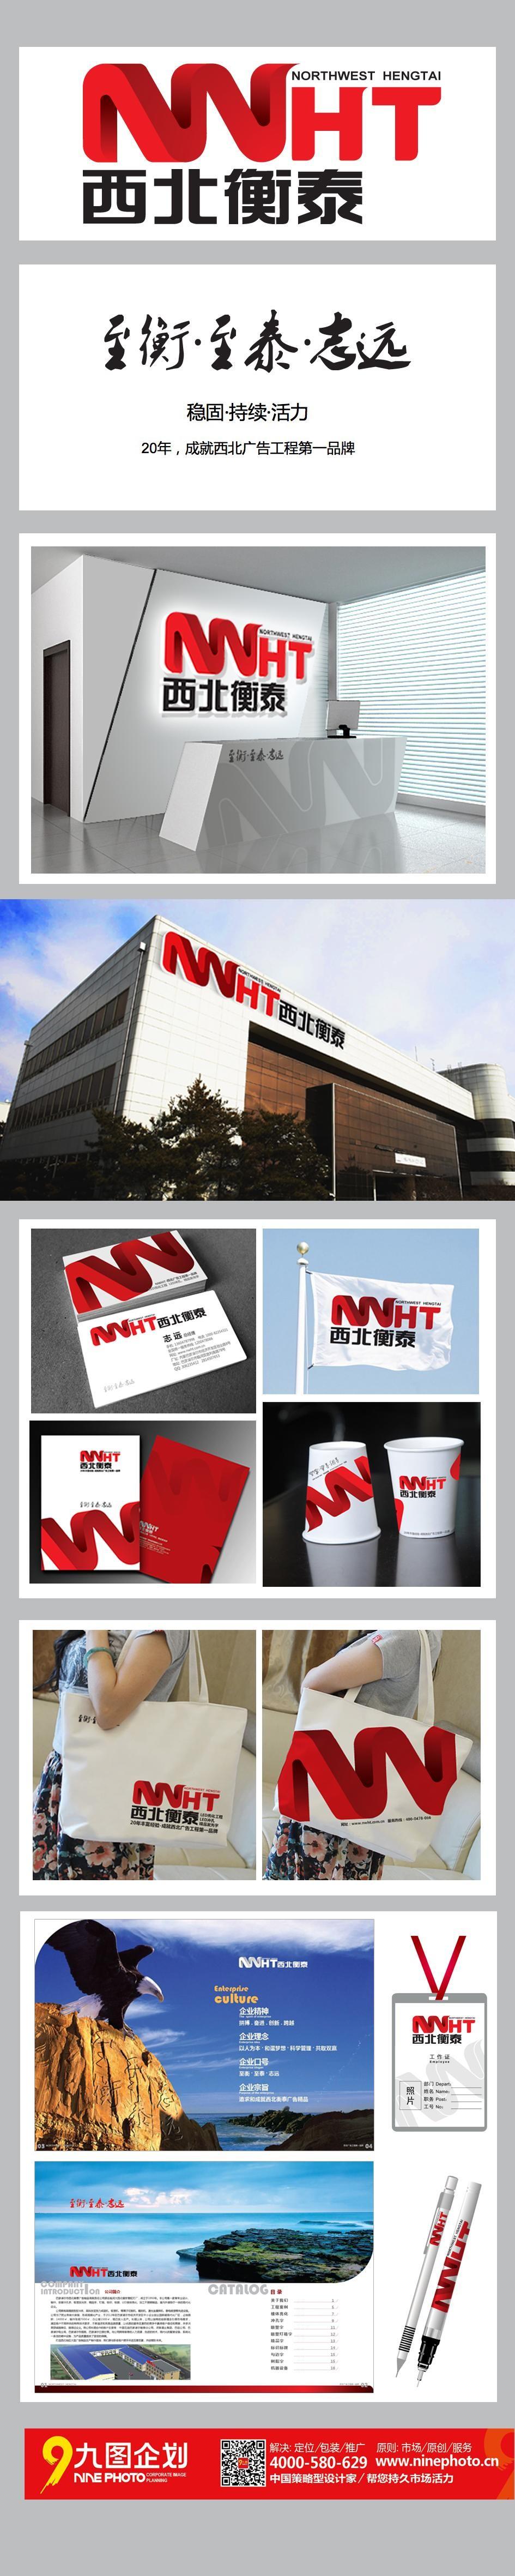 衡泰20年-西北广告工程第一品牌